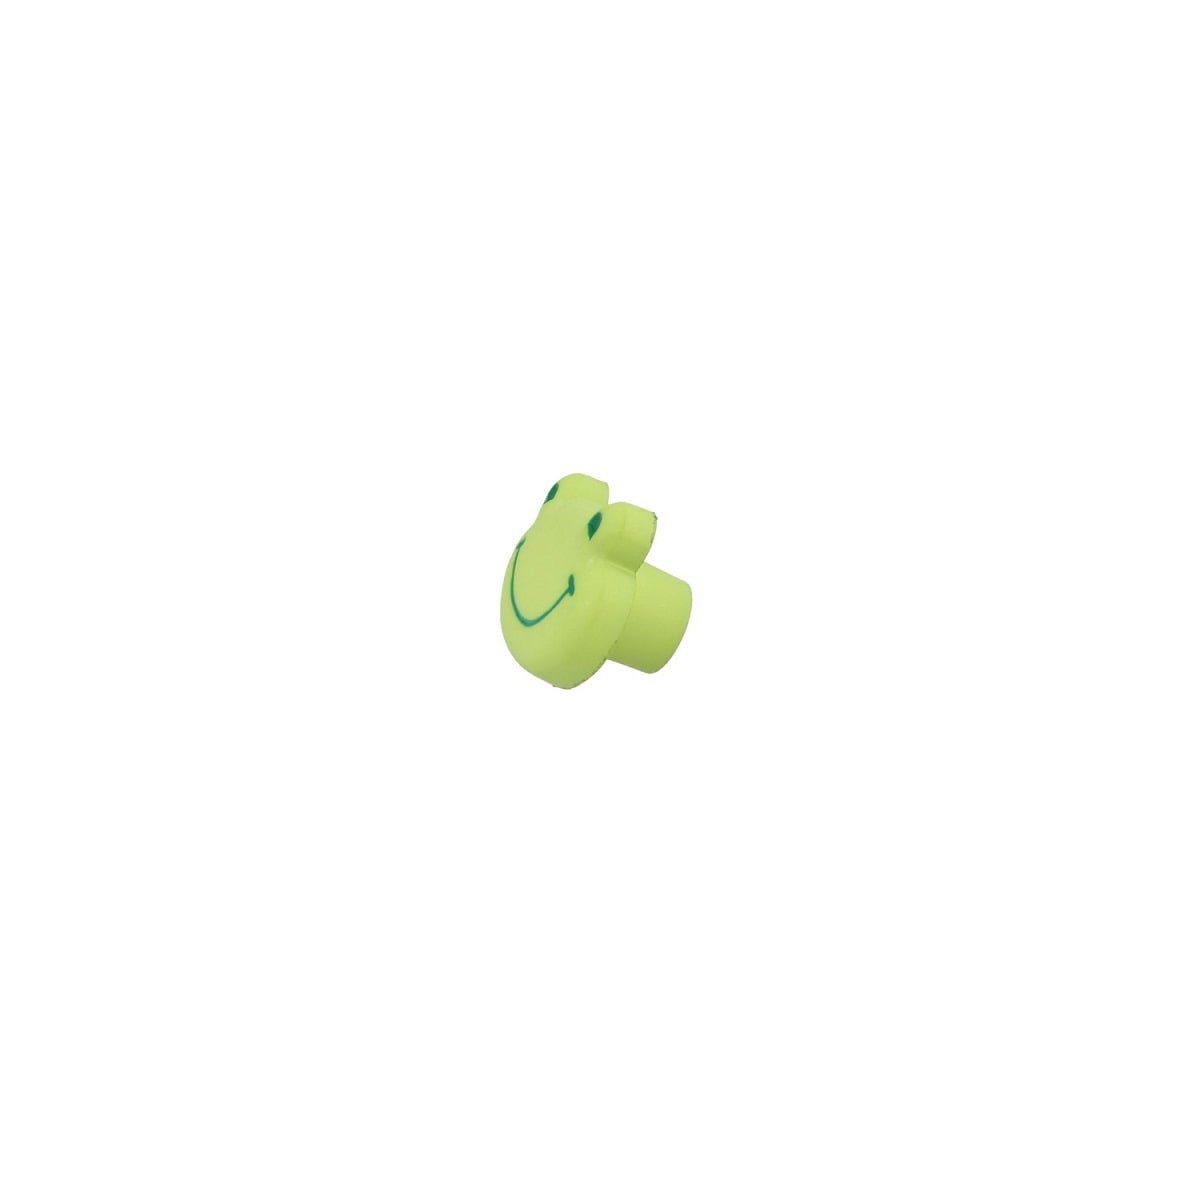 MS Beschläge Türbeschlag Möbelknopf 35mm Kindermöbelknopf Grüner Frosch